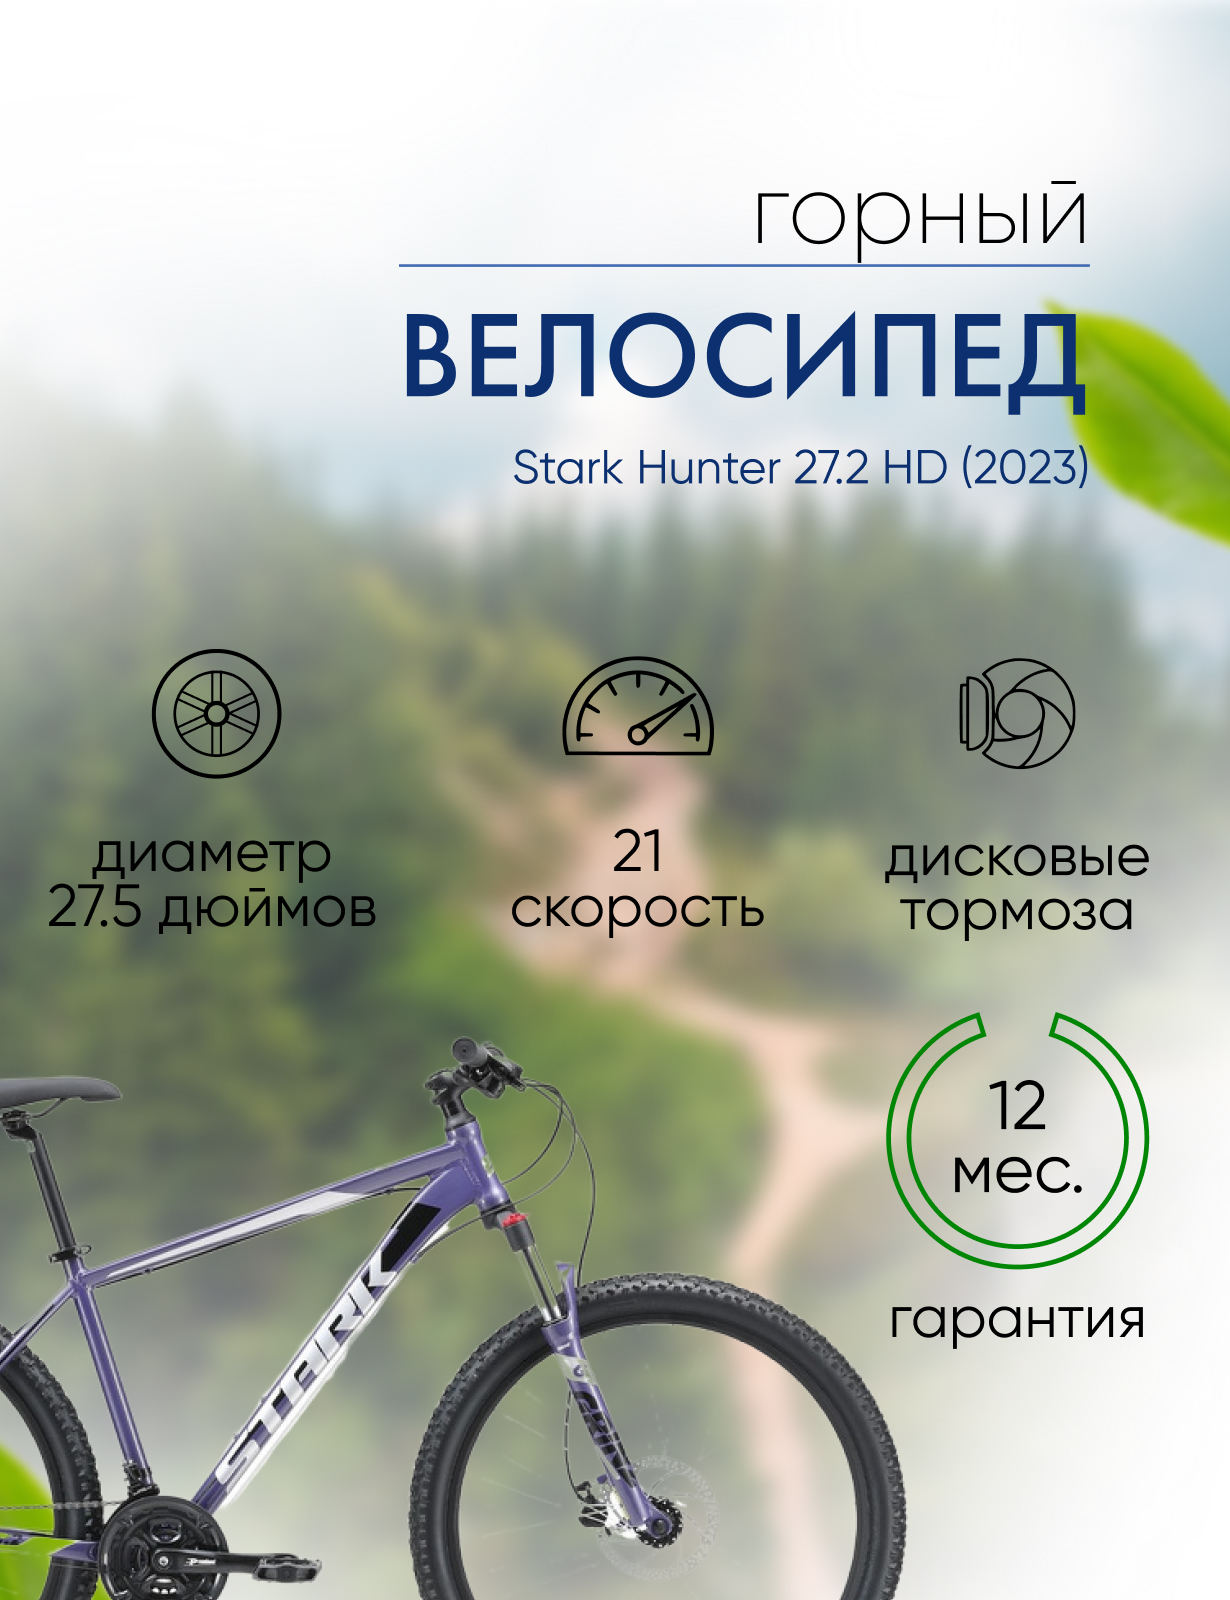 Горный велосипед Stark Hunter 27.2 HD, год 2023, цвет Фиолетовый-Серебристый, ростовка 16